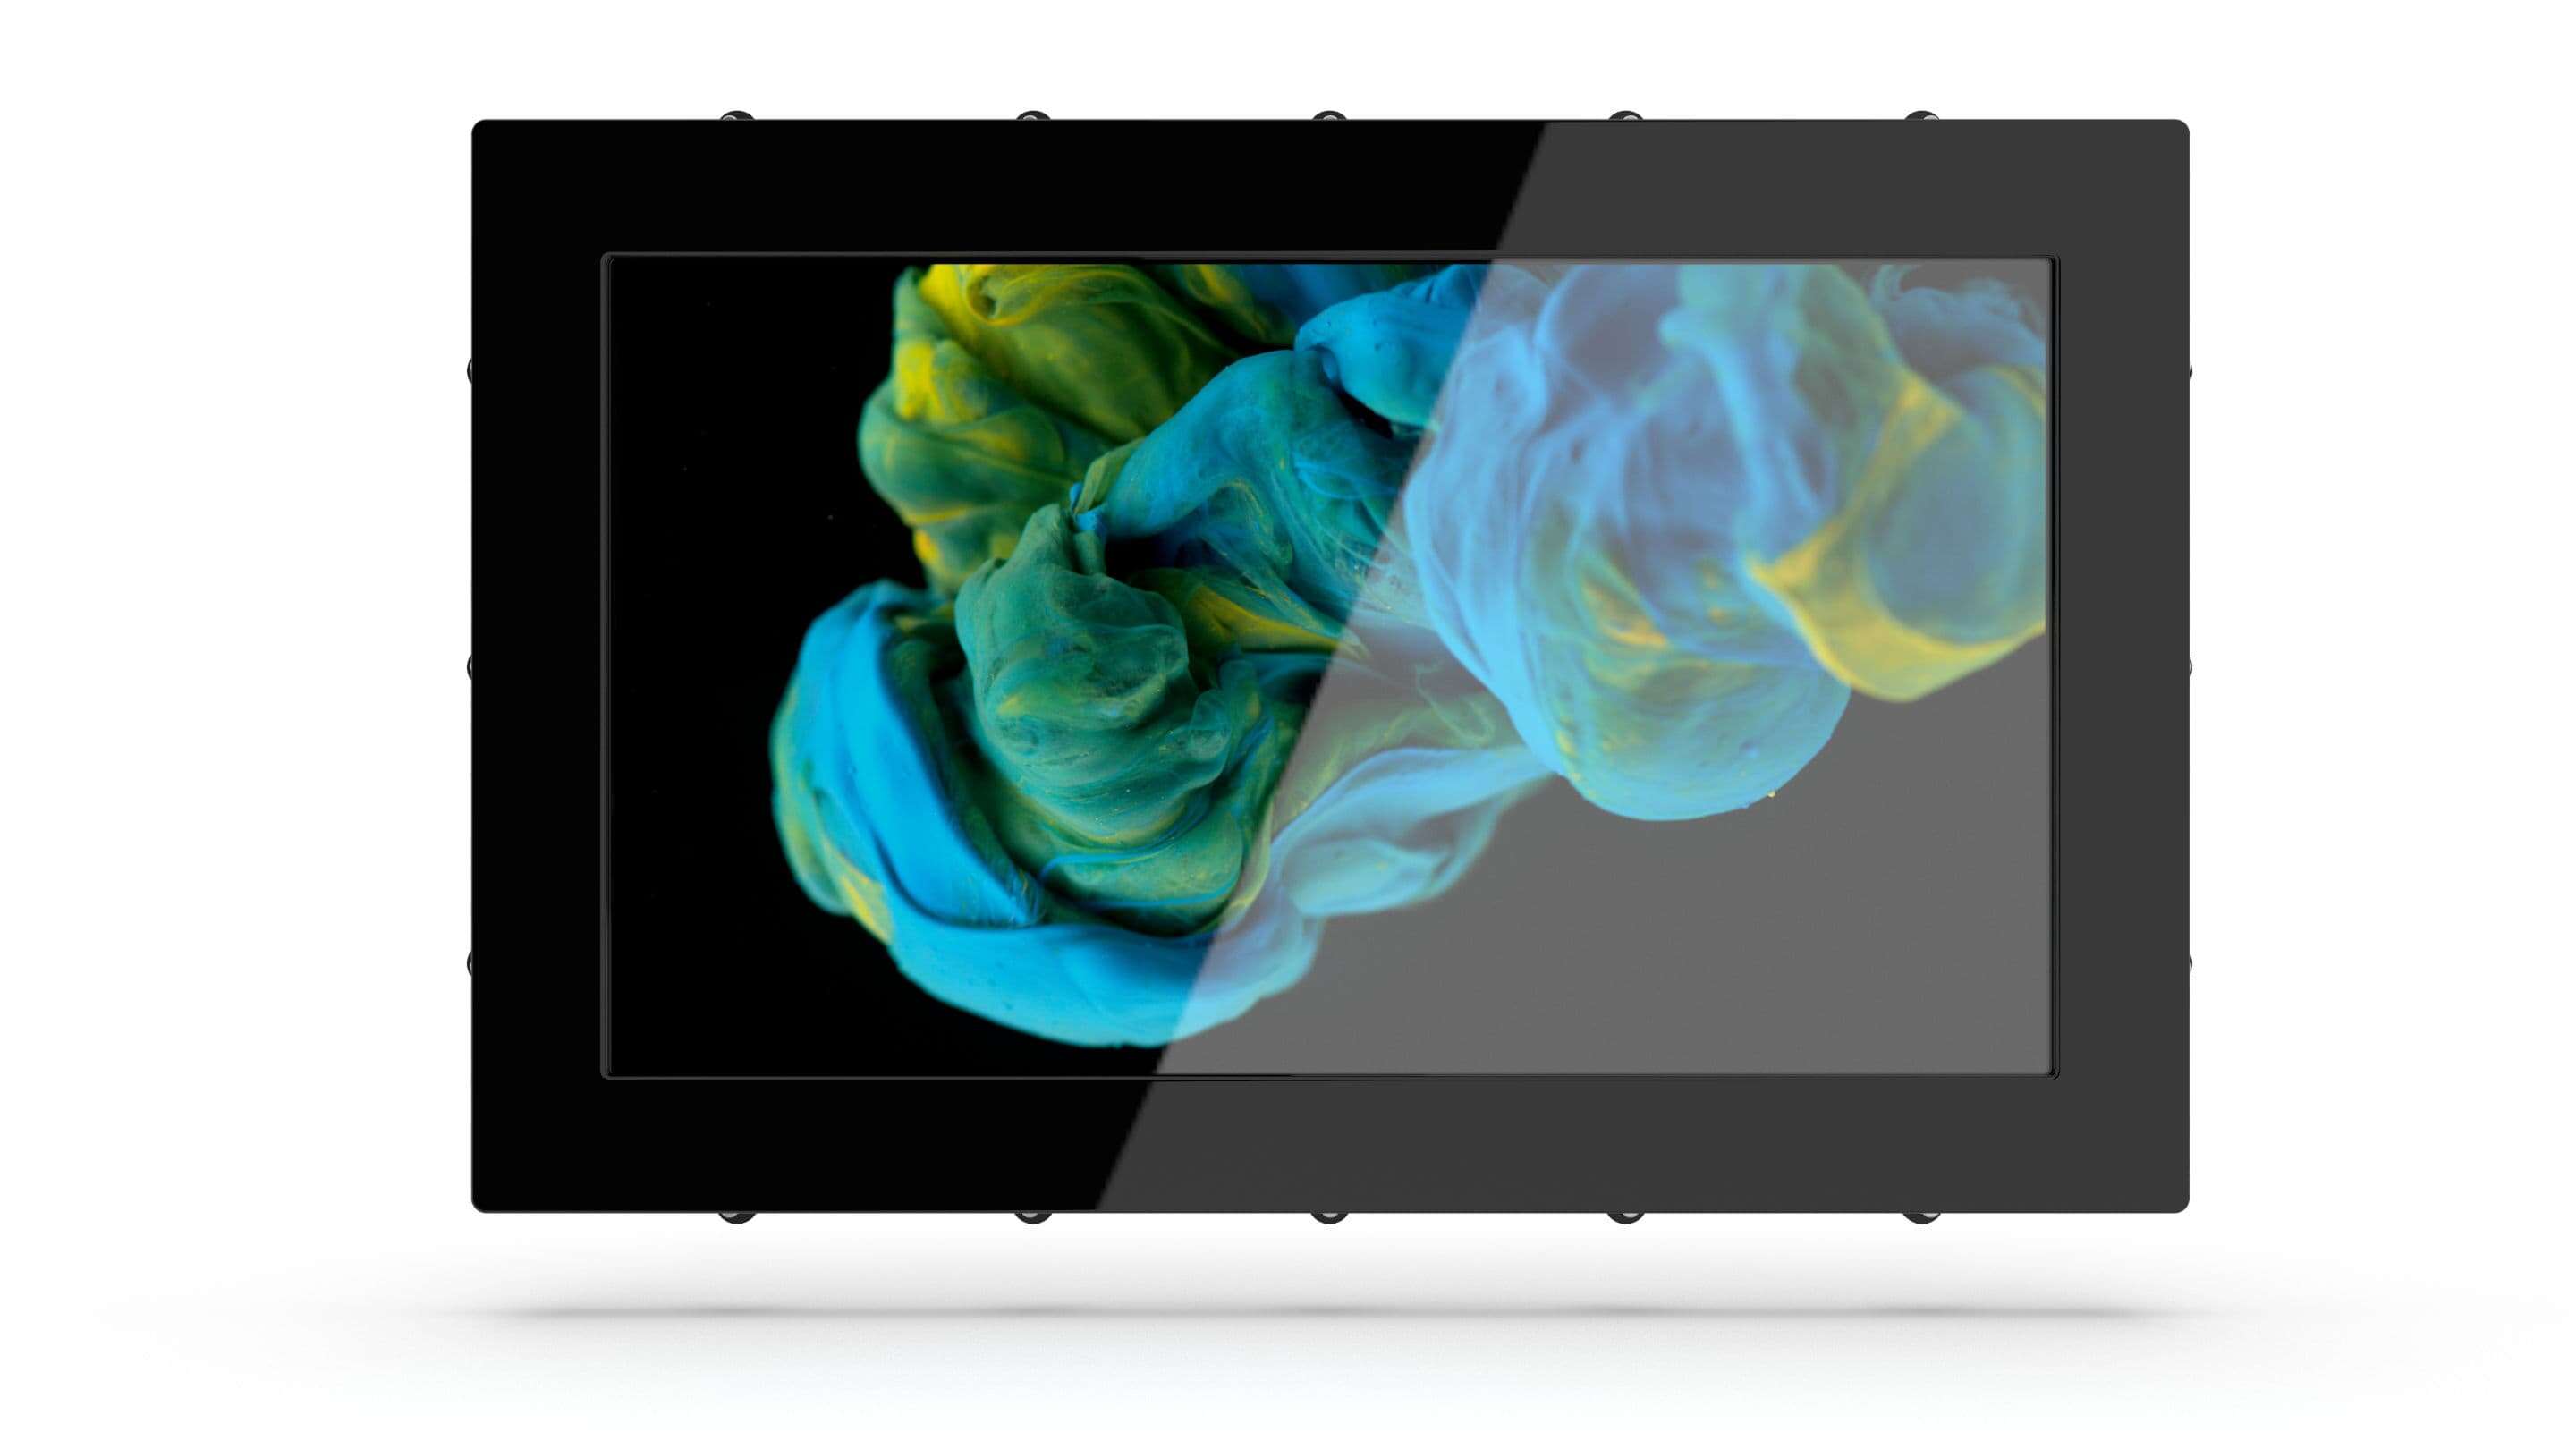 Home - Industrial Monitora um tablet preto com uma tela mostrando tinta azul e amarela